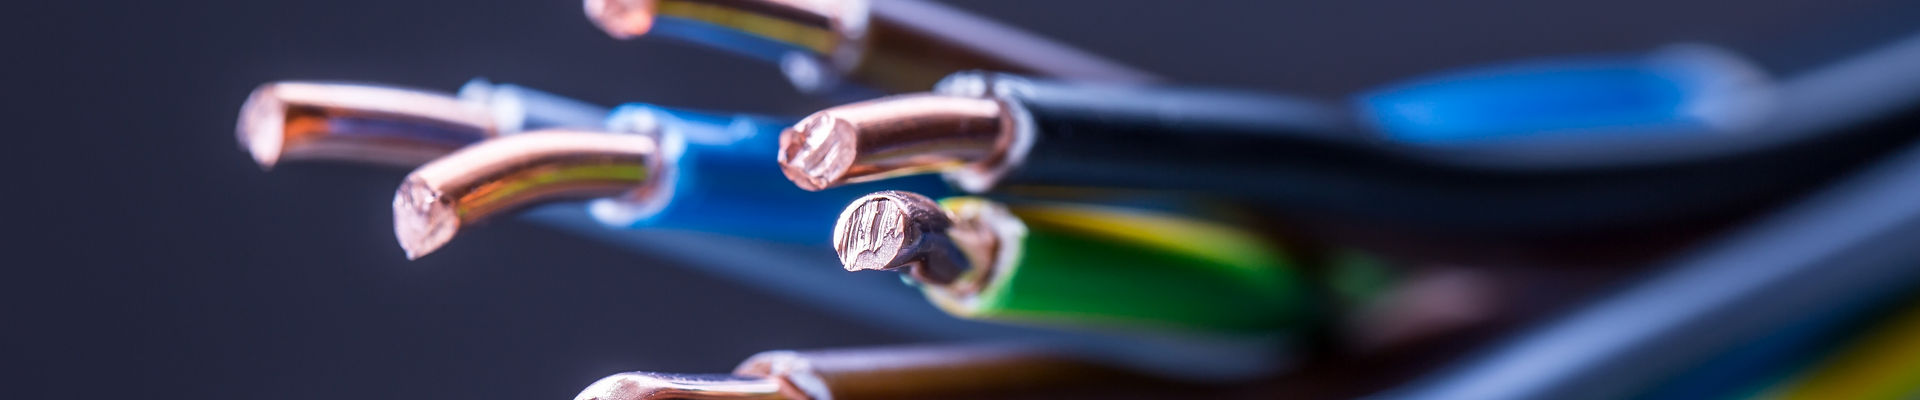 Conjunto de cables coloridos